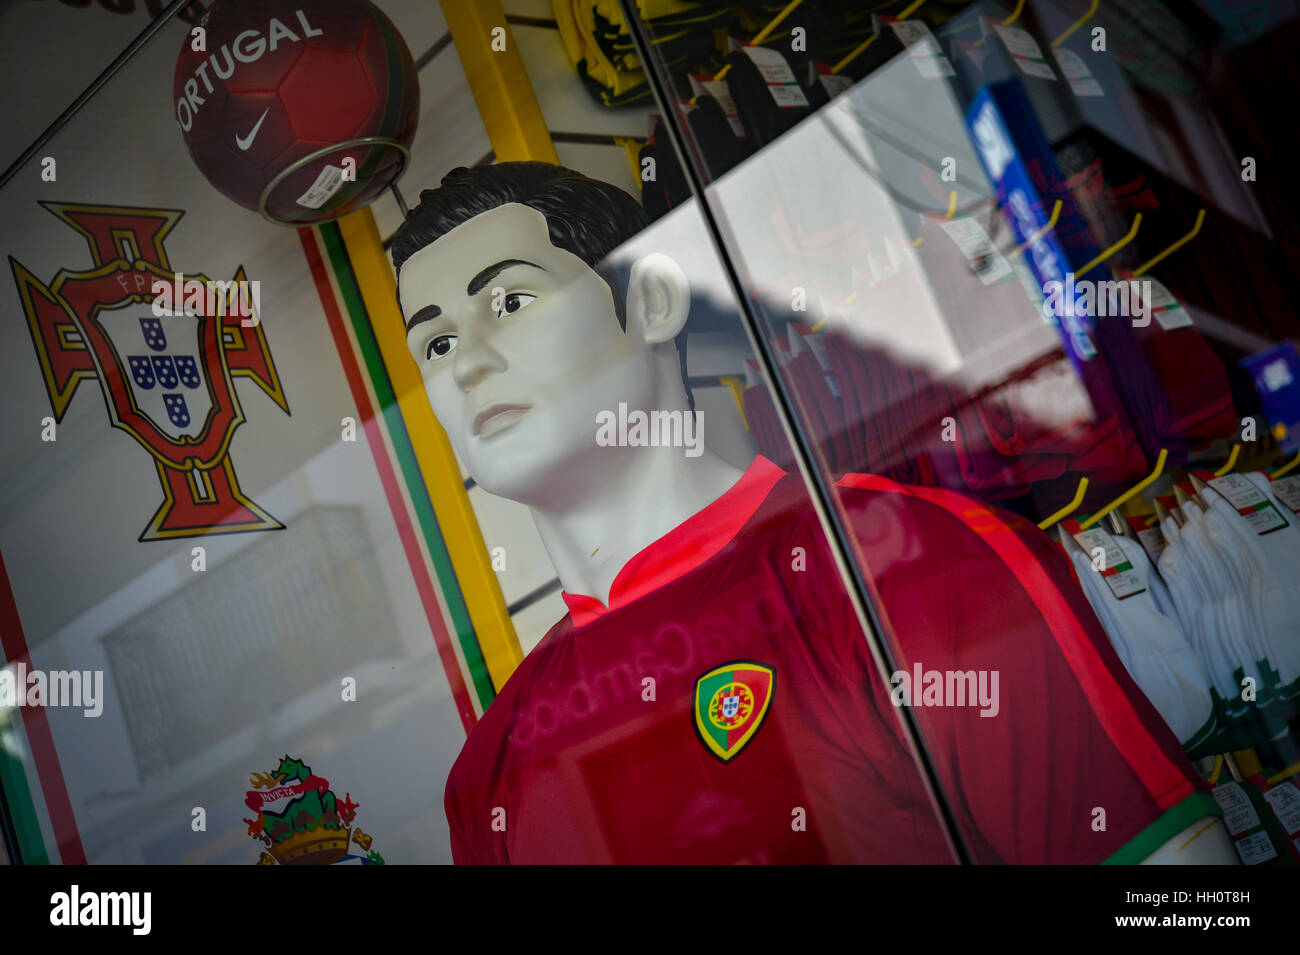 Ronaldo maniquí en un escaparate vistiendo los colores del equipo nacional portugués Foto de stock